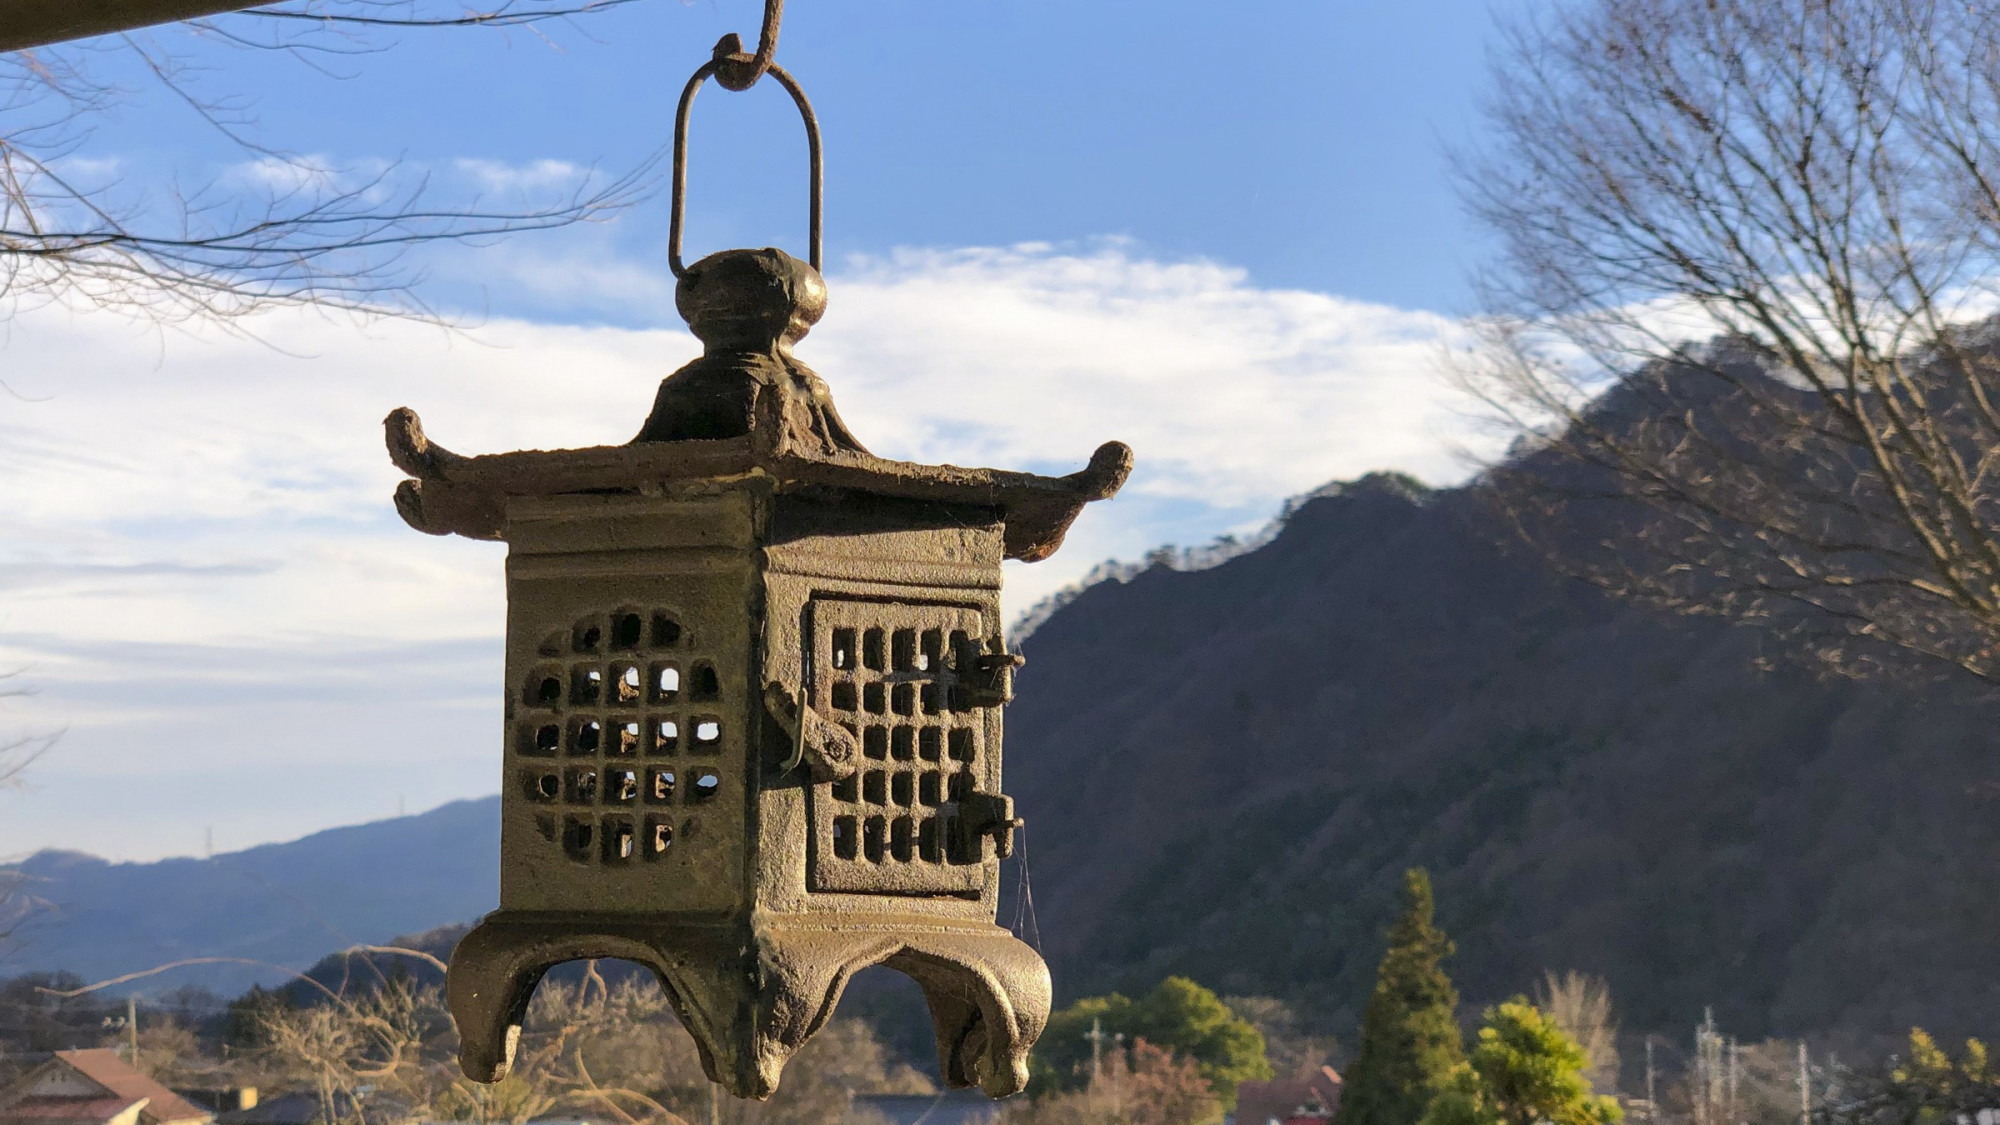 【外観】猿ヶ京温泉に伝わるさまざまな言い伝えのなかでも「座敷わらし」の逸話が残る。